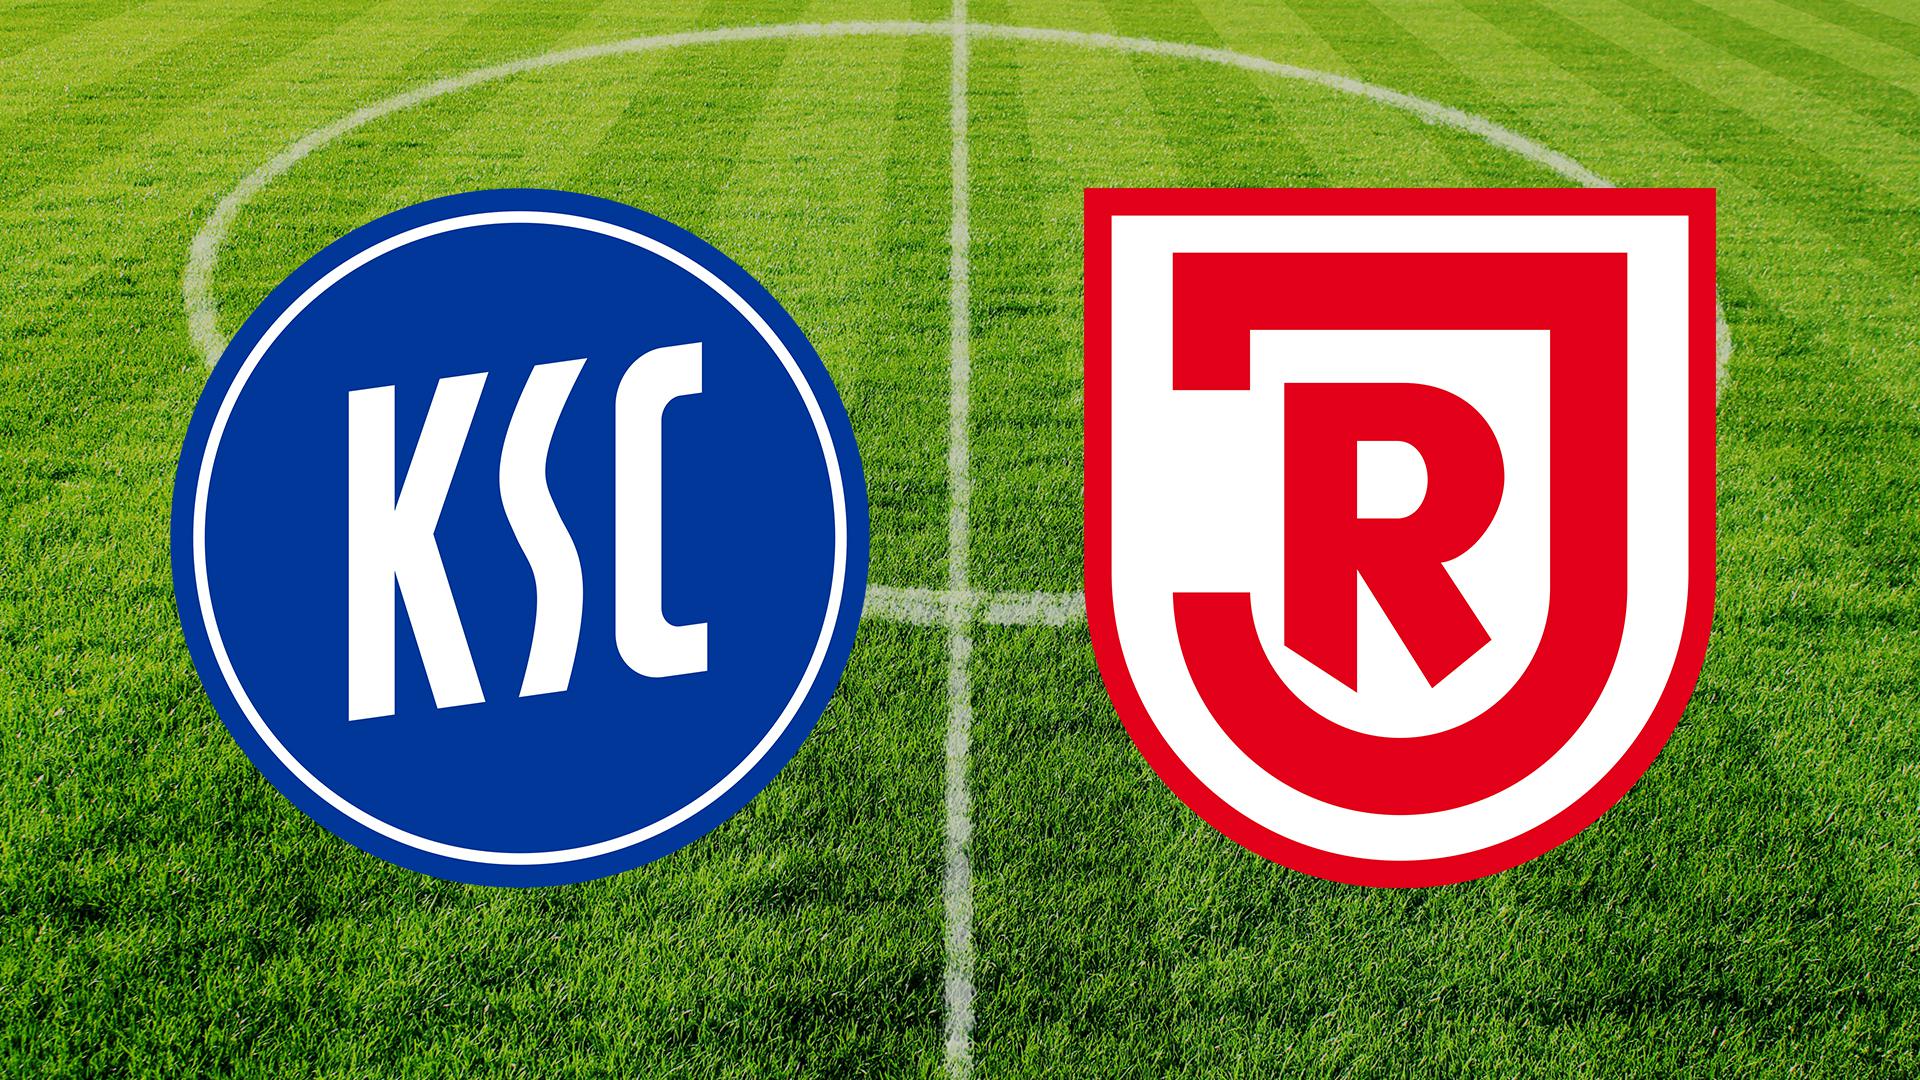 Die Logos der Verein KSC (links) und Jahn Regensburg (rechts). Im Hintergrund ein Fußballplatz.